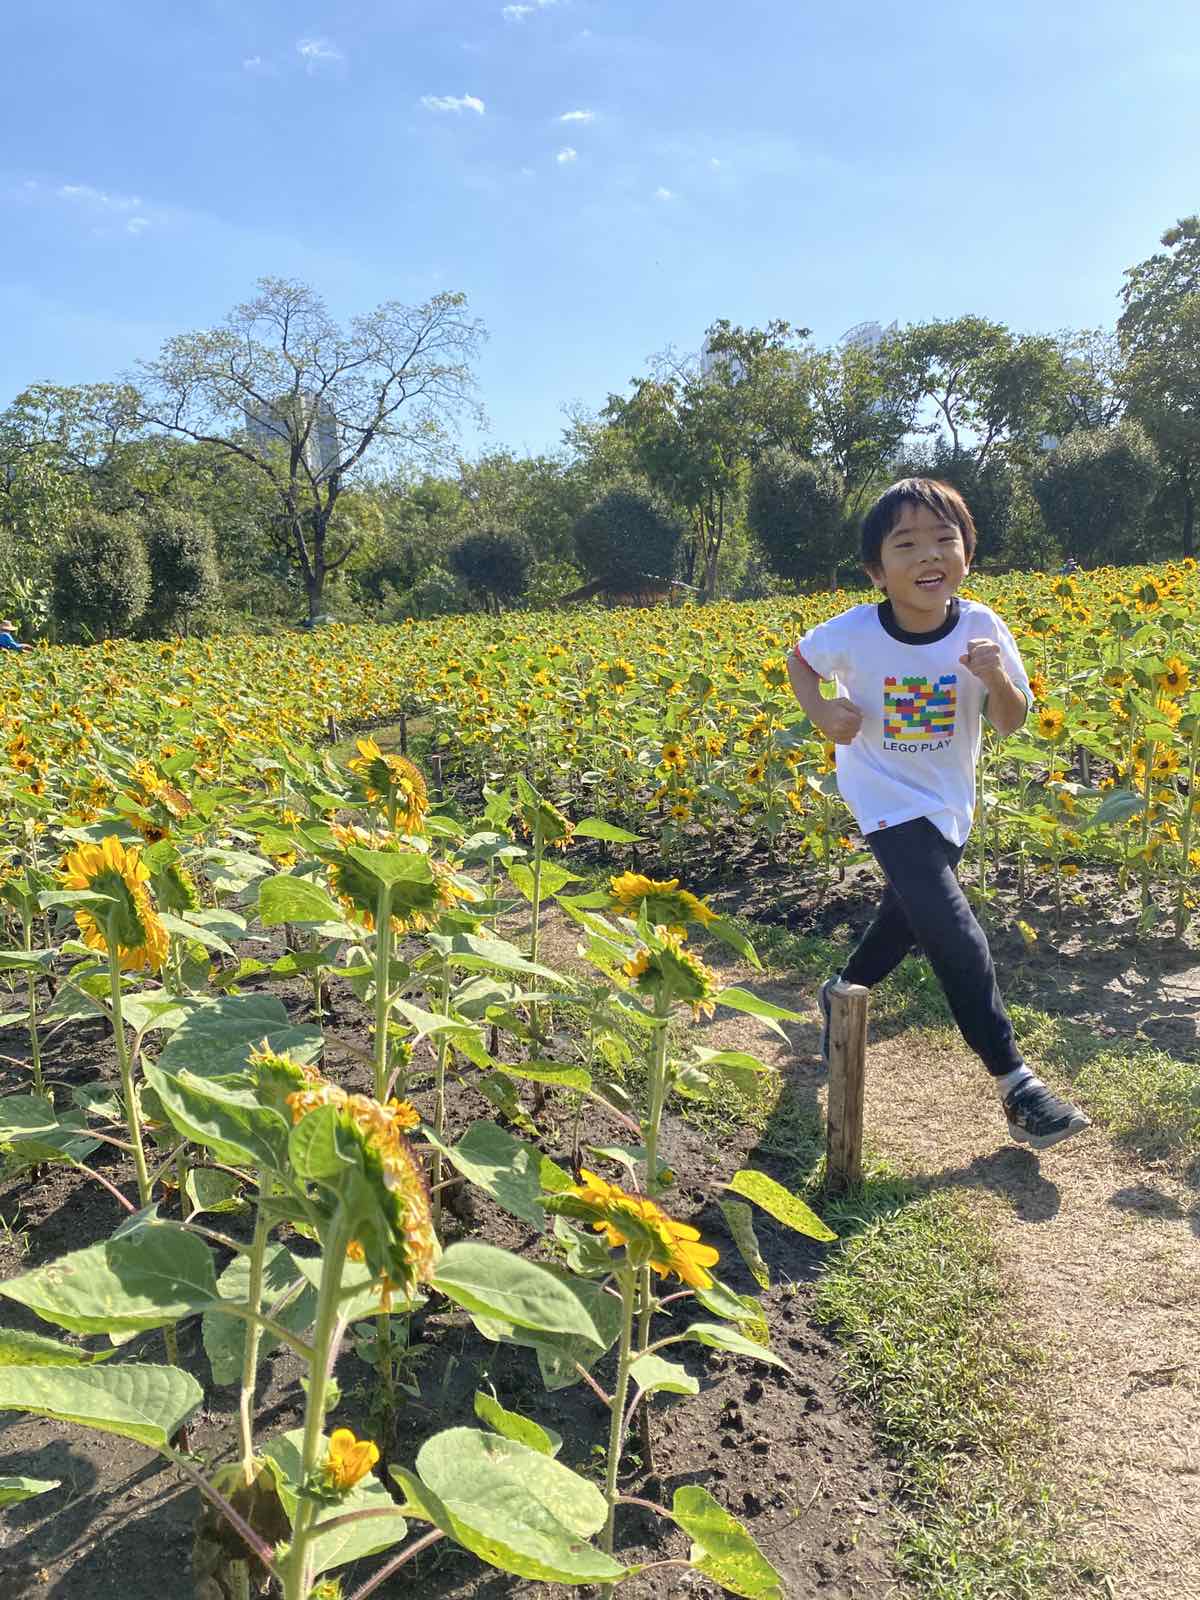 Little boy running in a sunflower field